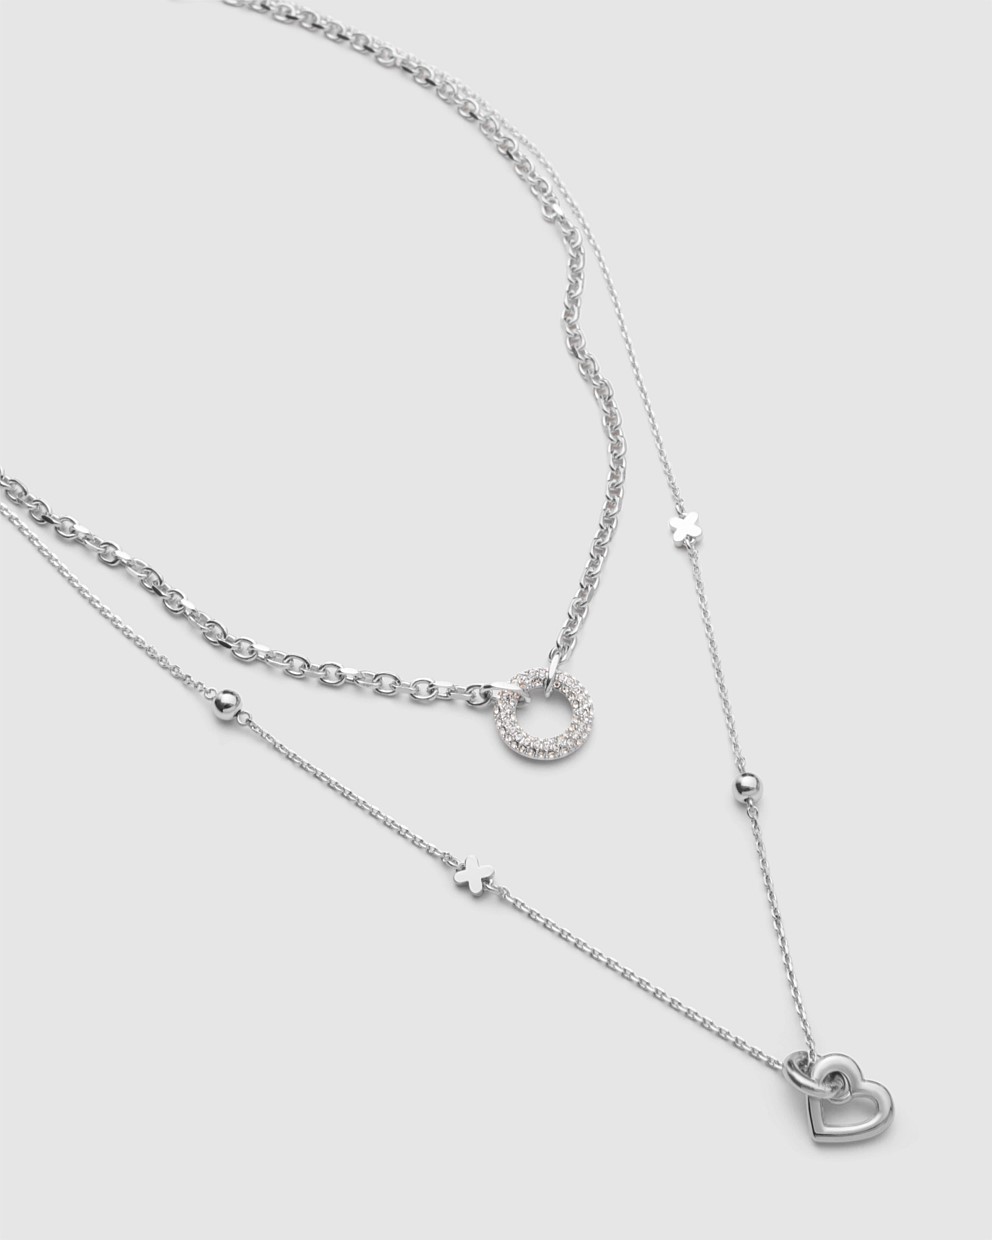 Silver Reflection Necklace - Silver Necklaces | Mimco